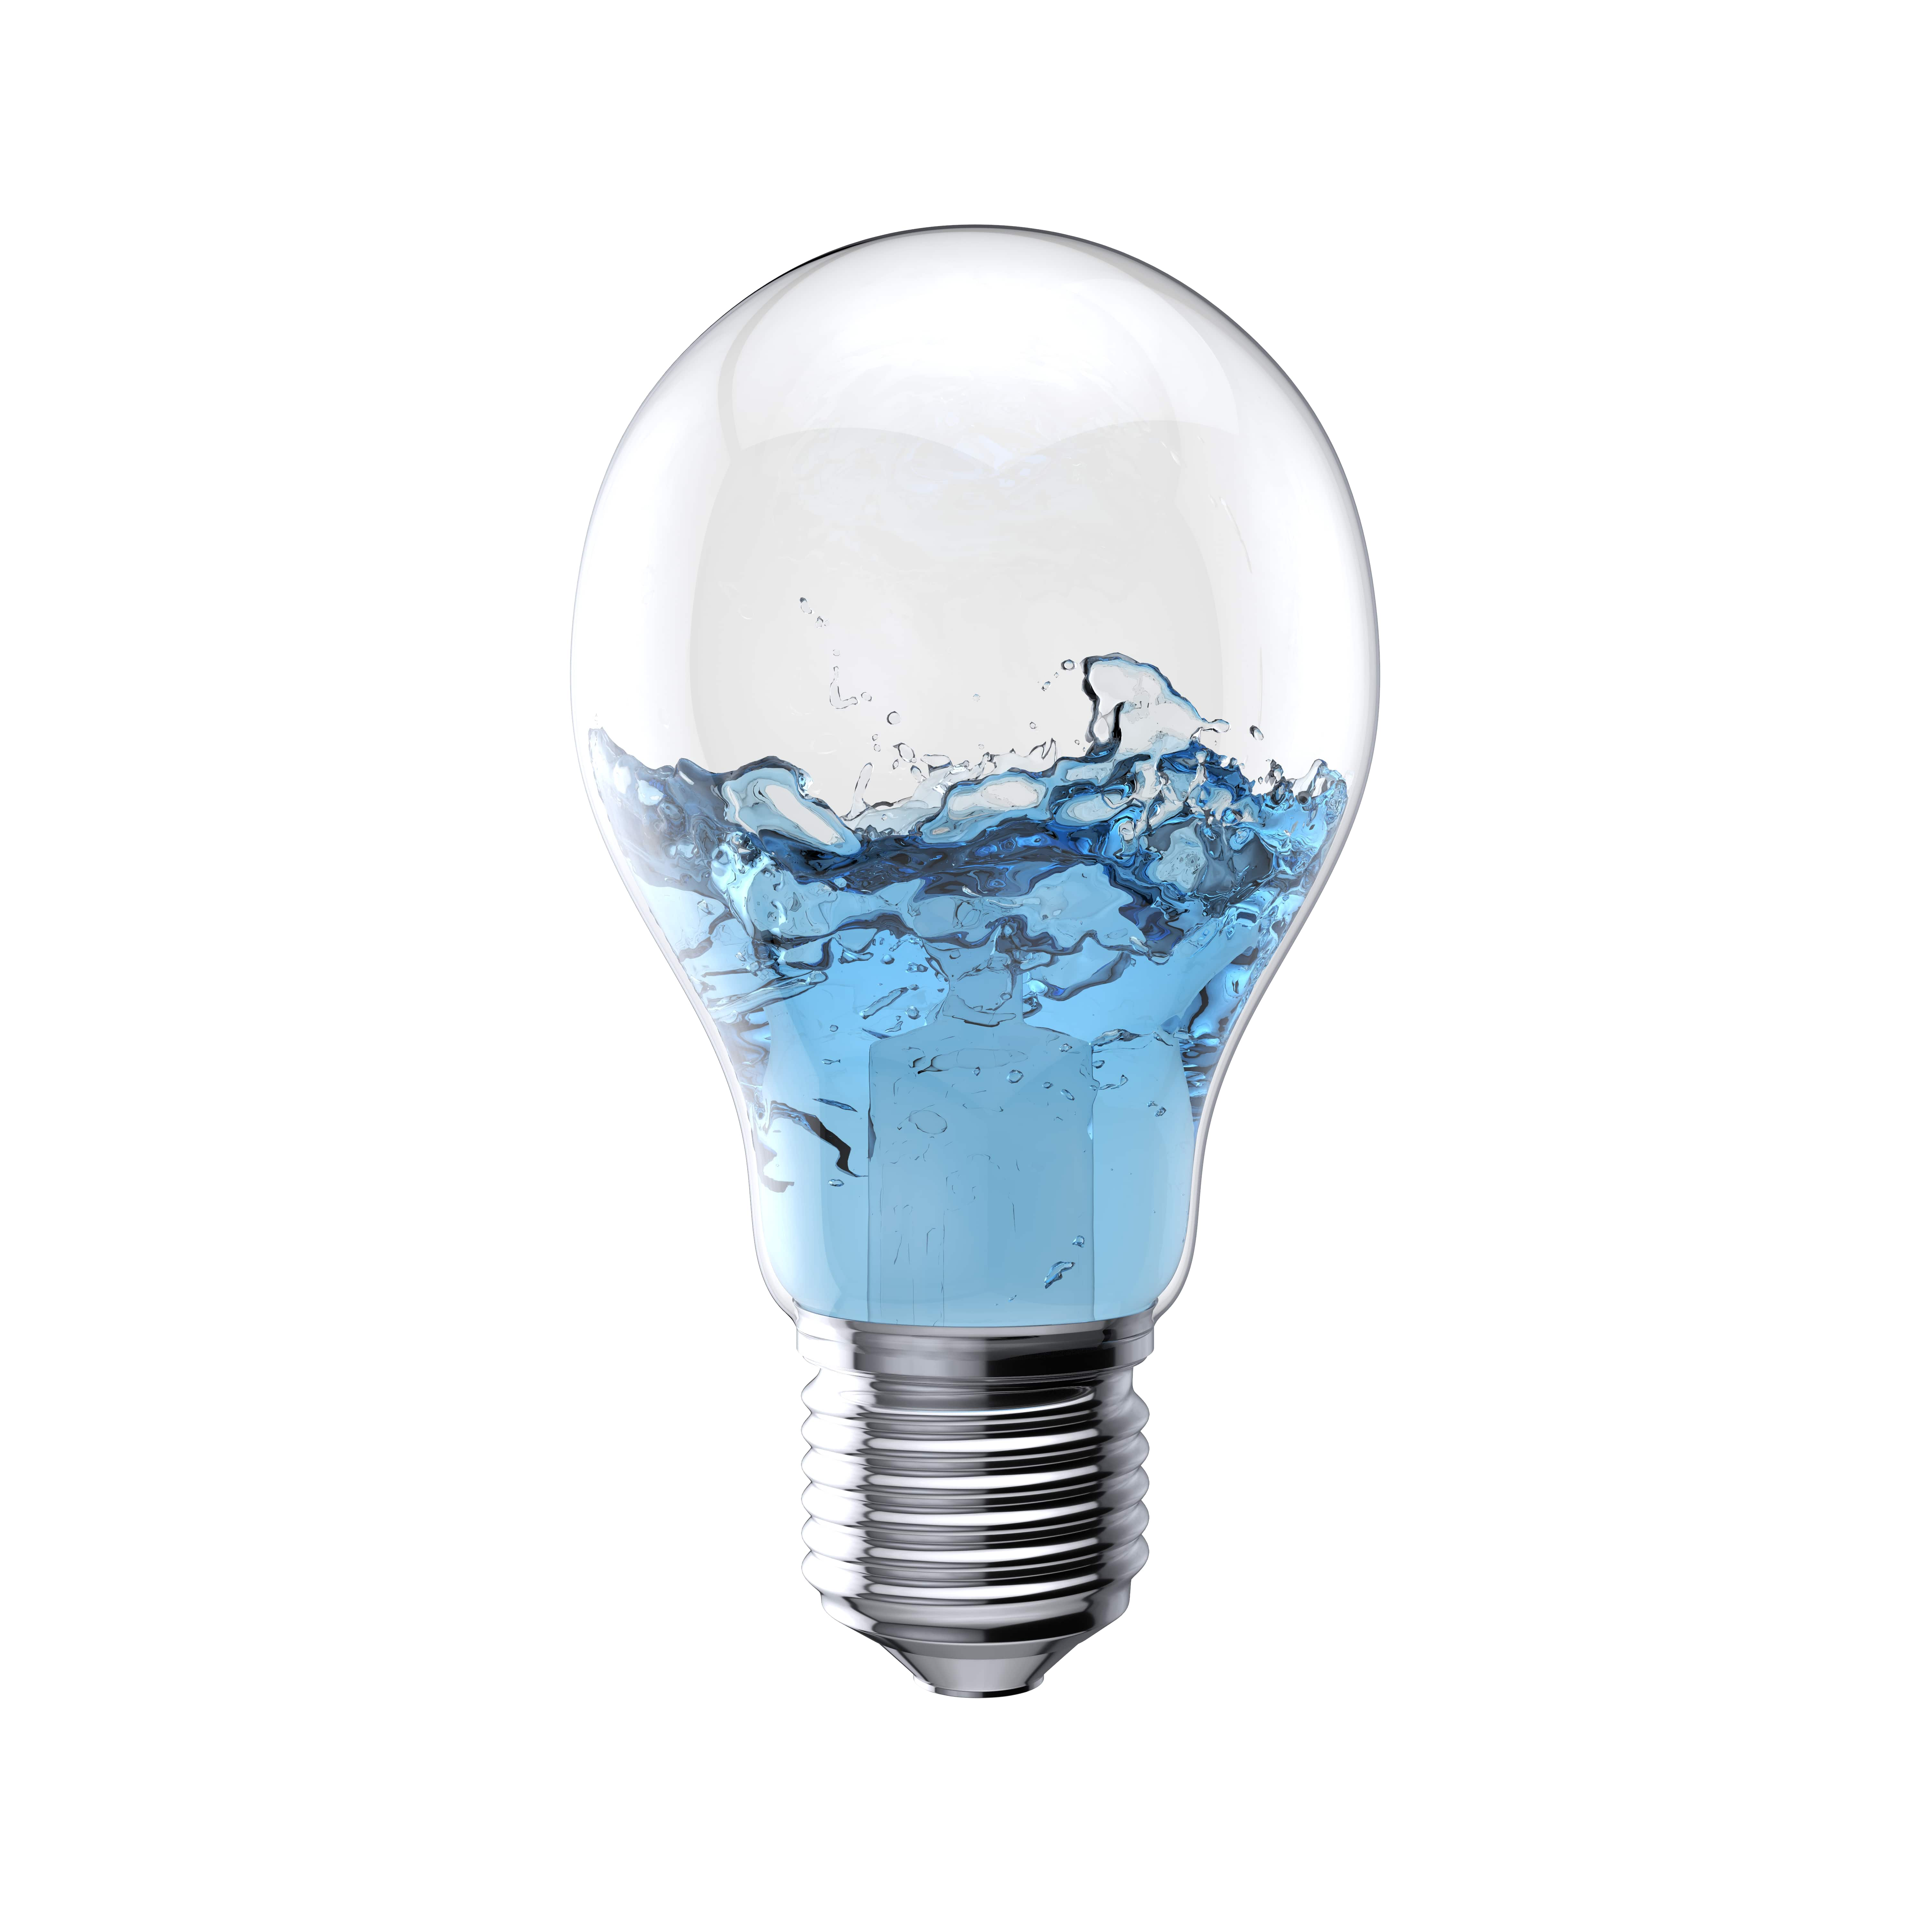 Image d'une ampoule contenant de l'eau de piscine